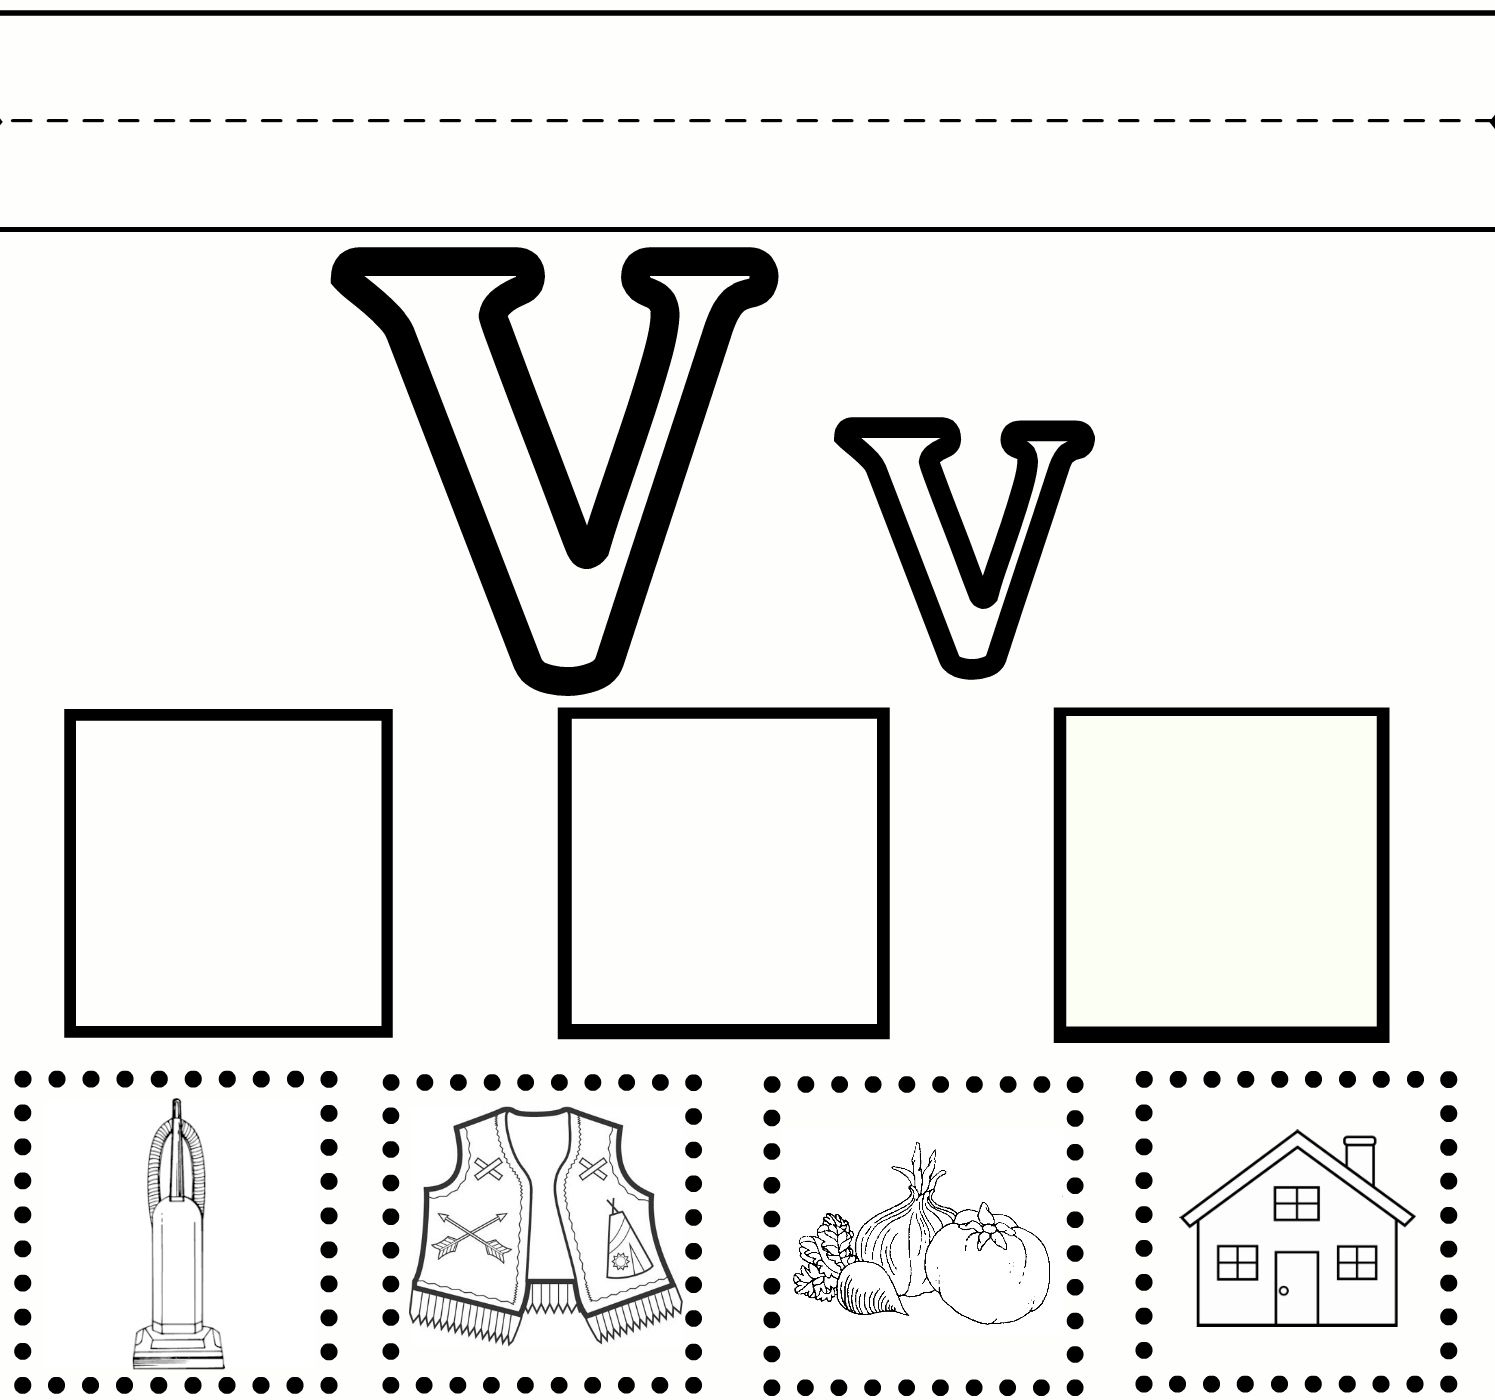 V Practice (With Images) | Letter V Worksheets, Preschool within Letter V Tracing Sheet